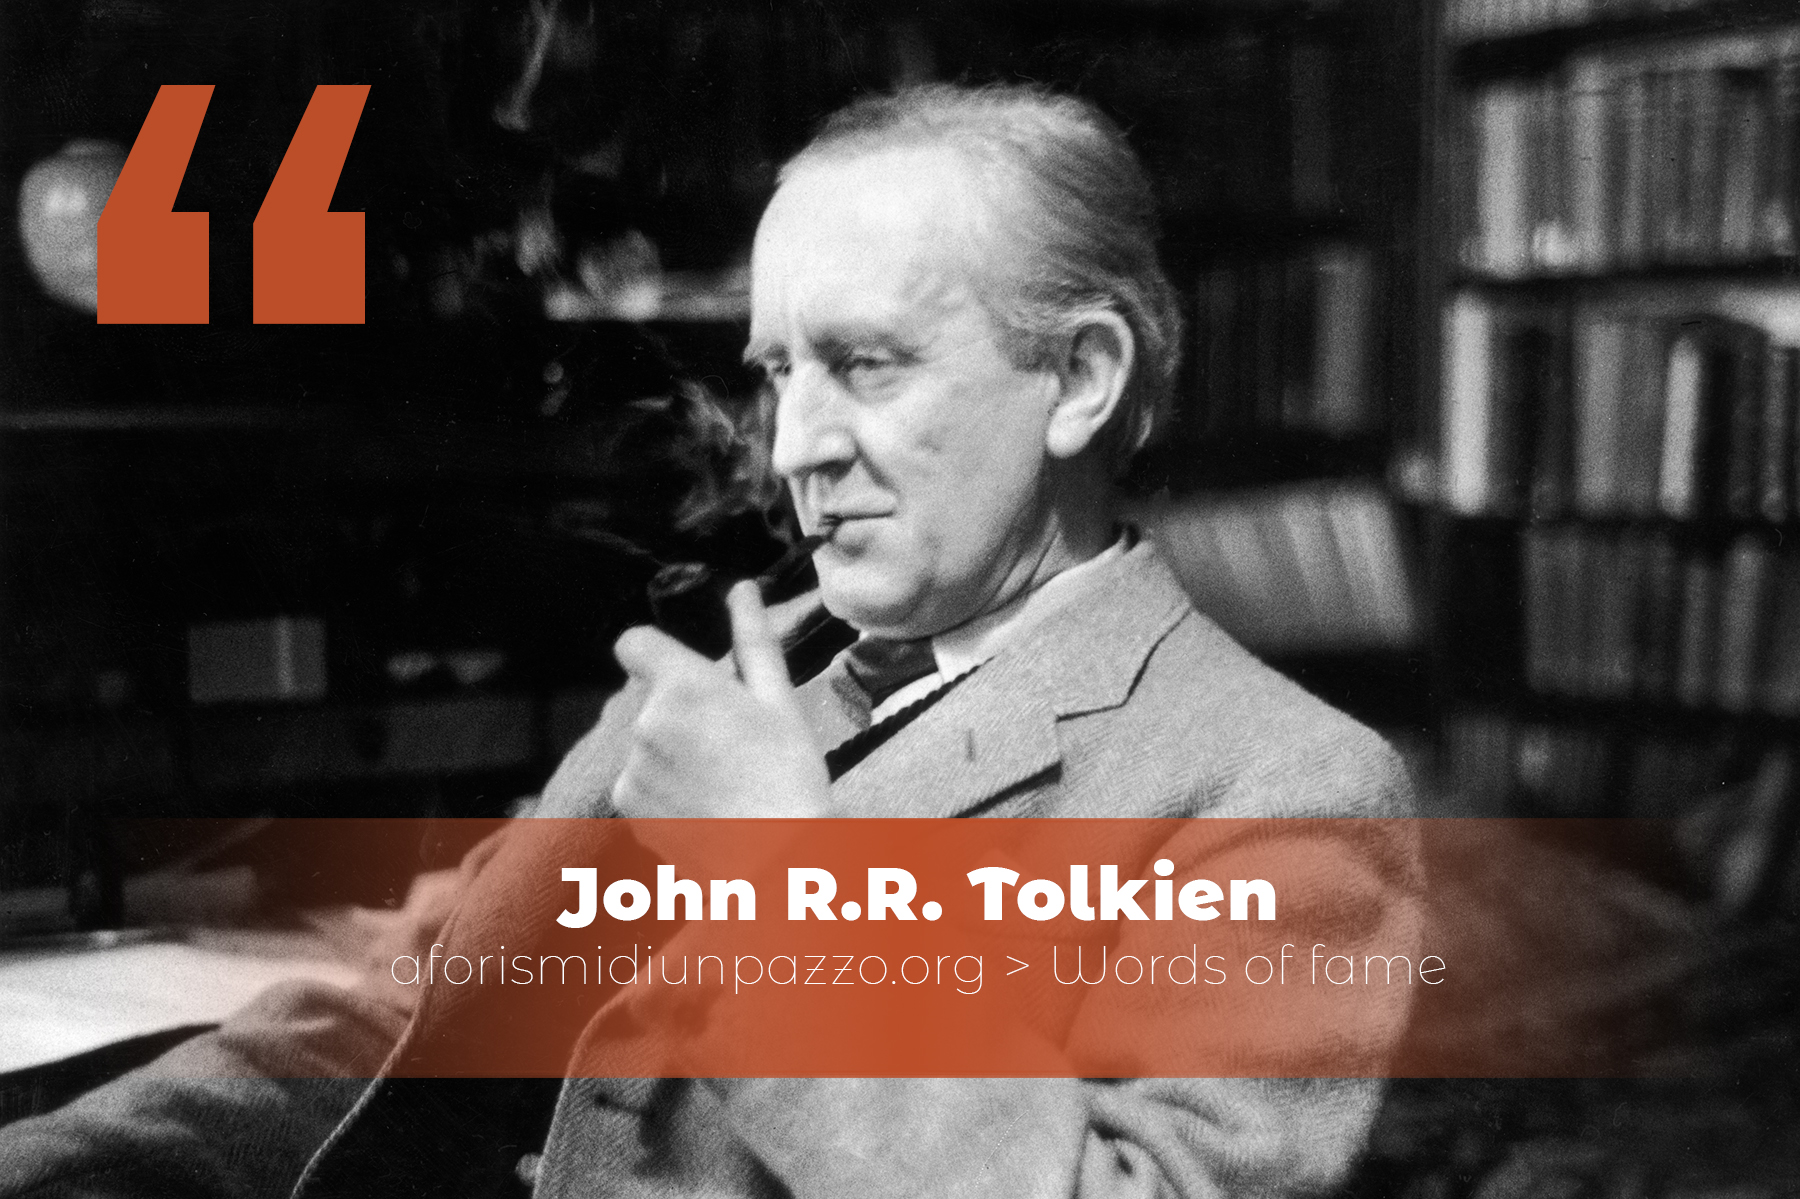 John R.R. Tolkien